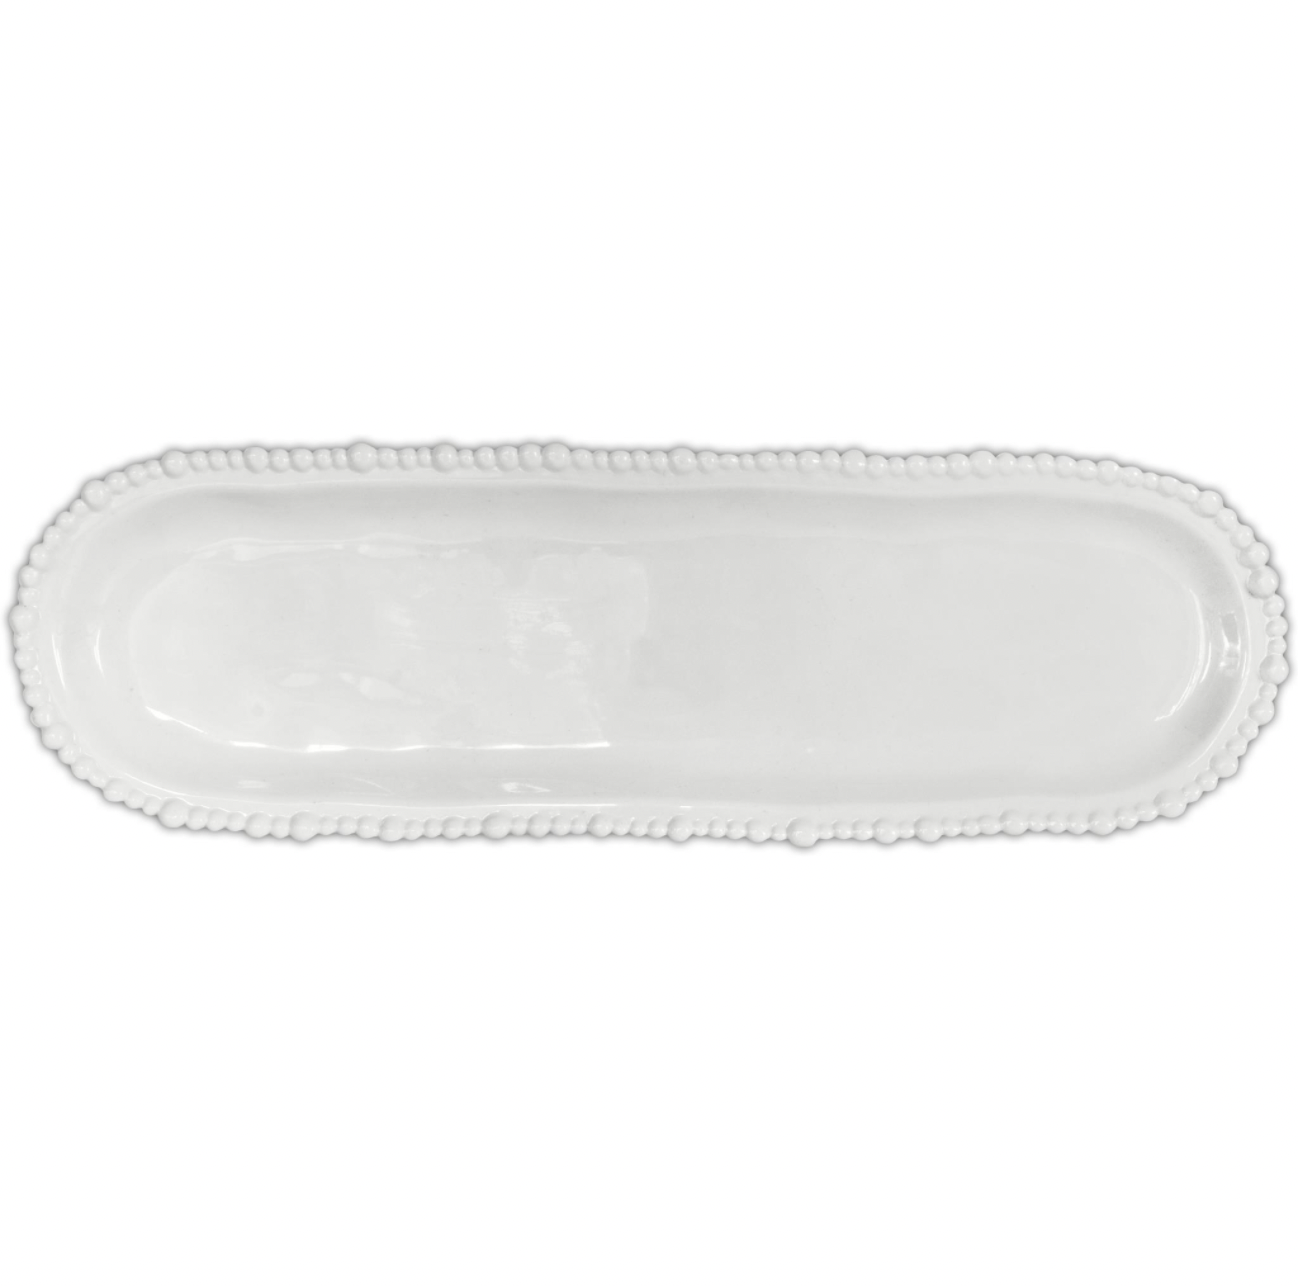 Baci Melamine White Oval Platter 44.5x13.5cm